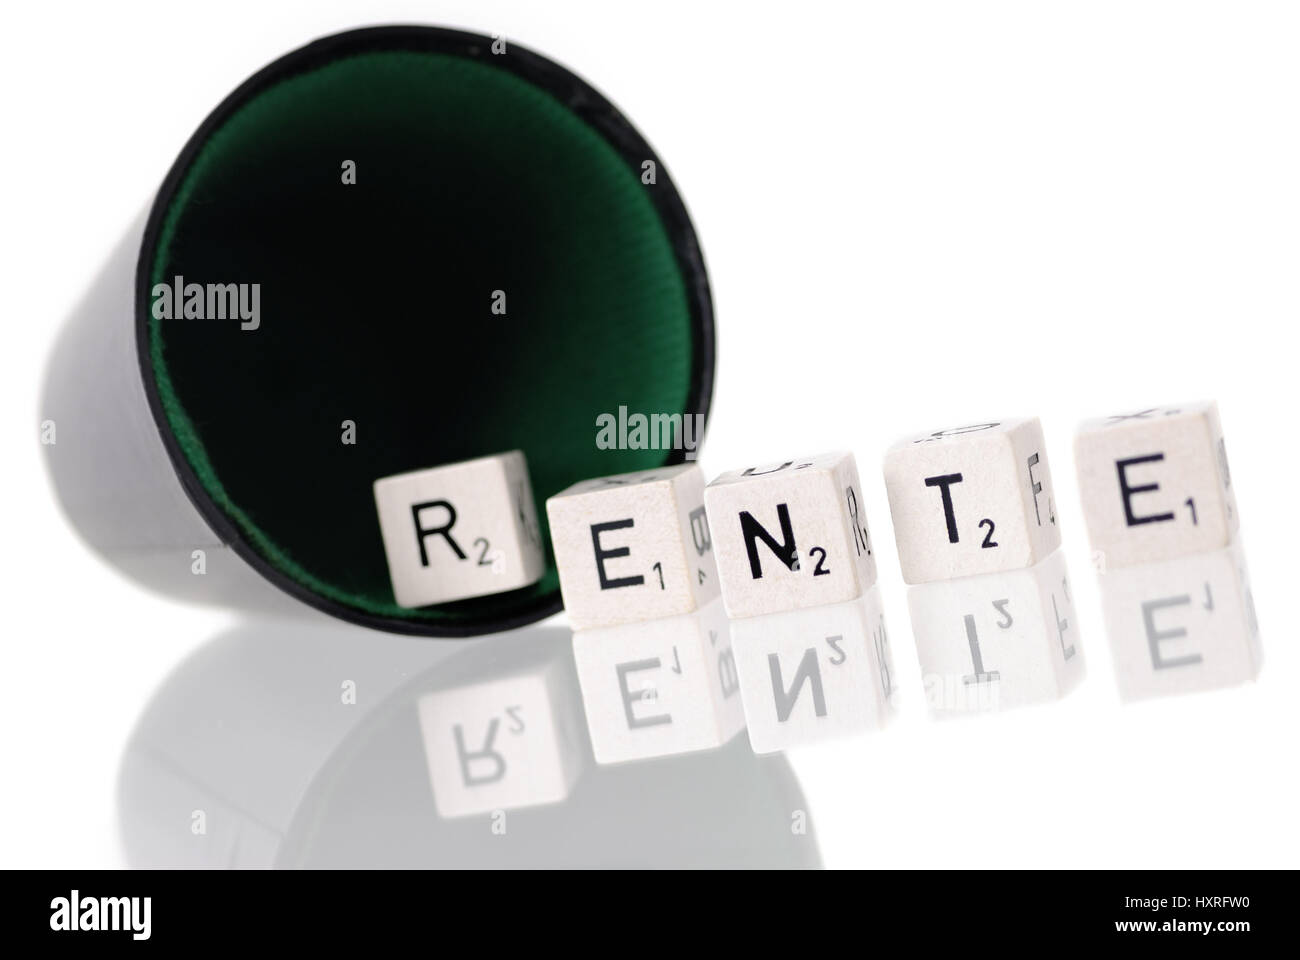 Dice cup with letter cube, stroke pension, Würfelbecher mit Buchstabenwürfel, Schriftzug Rente Stock Photo